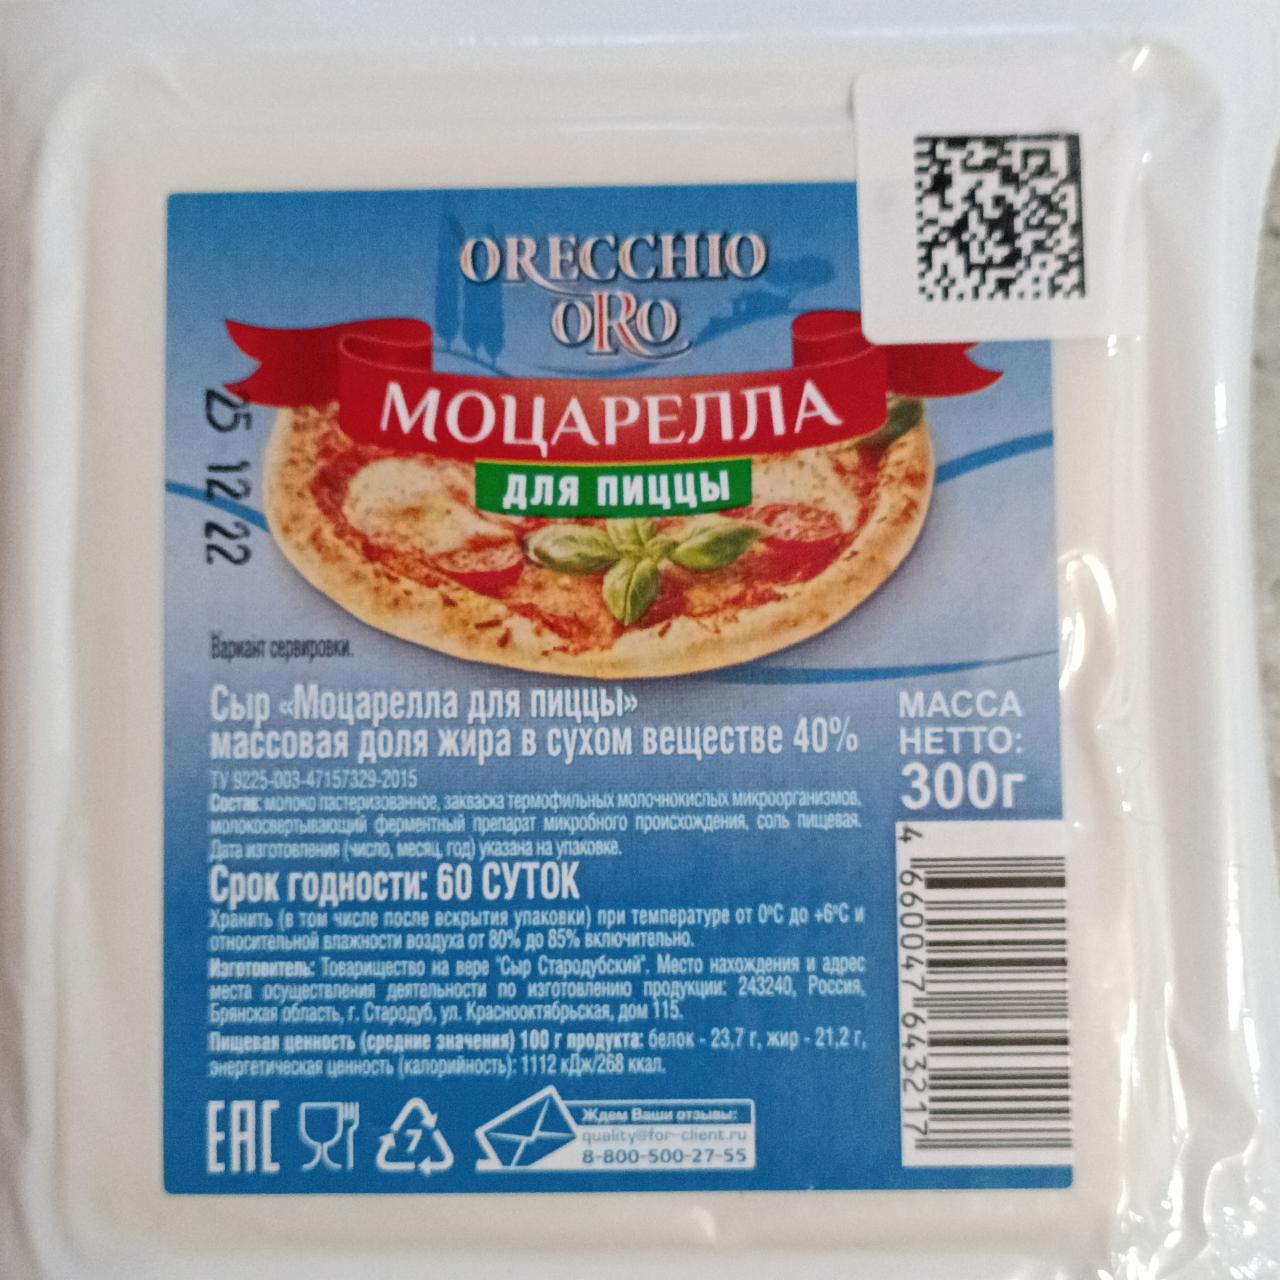 Фото - Сыр Моцарелла для пиццы Orecchio Oro